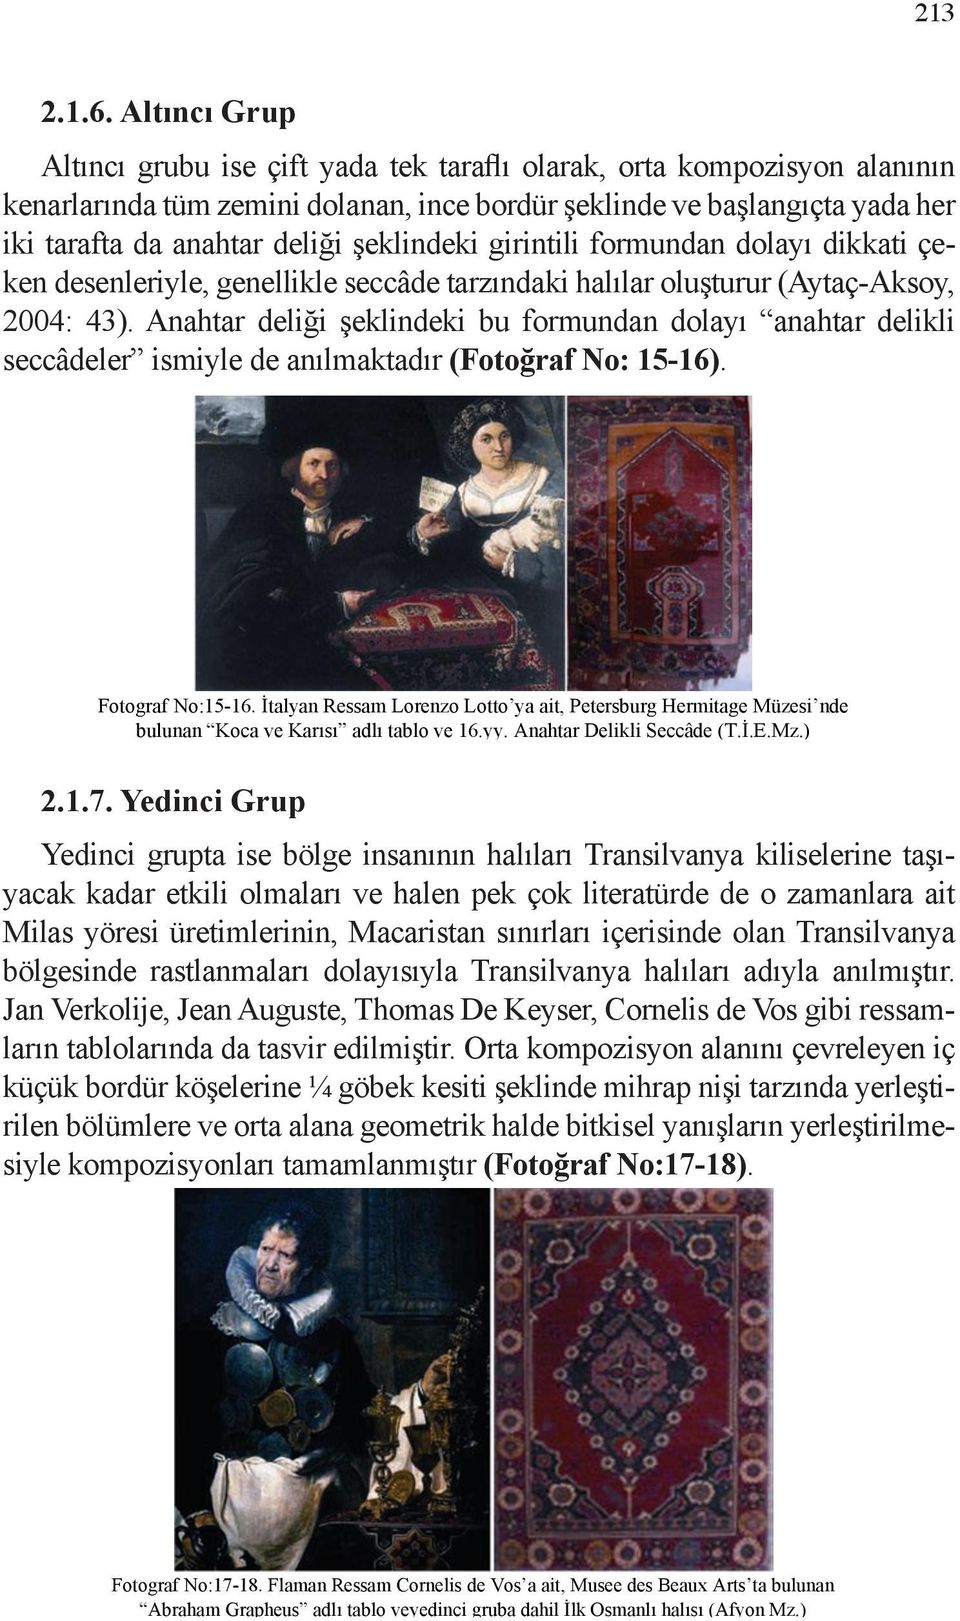 Flaman Ressam Hans Memling e ait, Madrid Bornemisza Müzesi nde Altıncı grubu bulunan ise Çiçekli çift yada Natürmort, tek ve taraflı 16. yy. Konya olarak, hal s (Konya orta kompozisyon Etn. Mz.